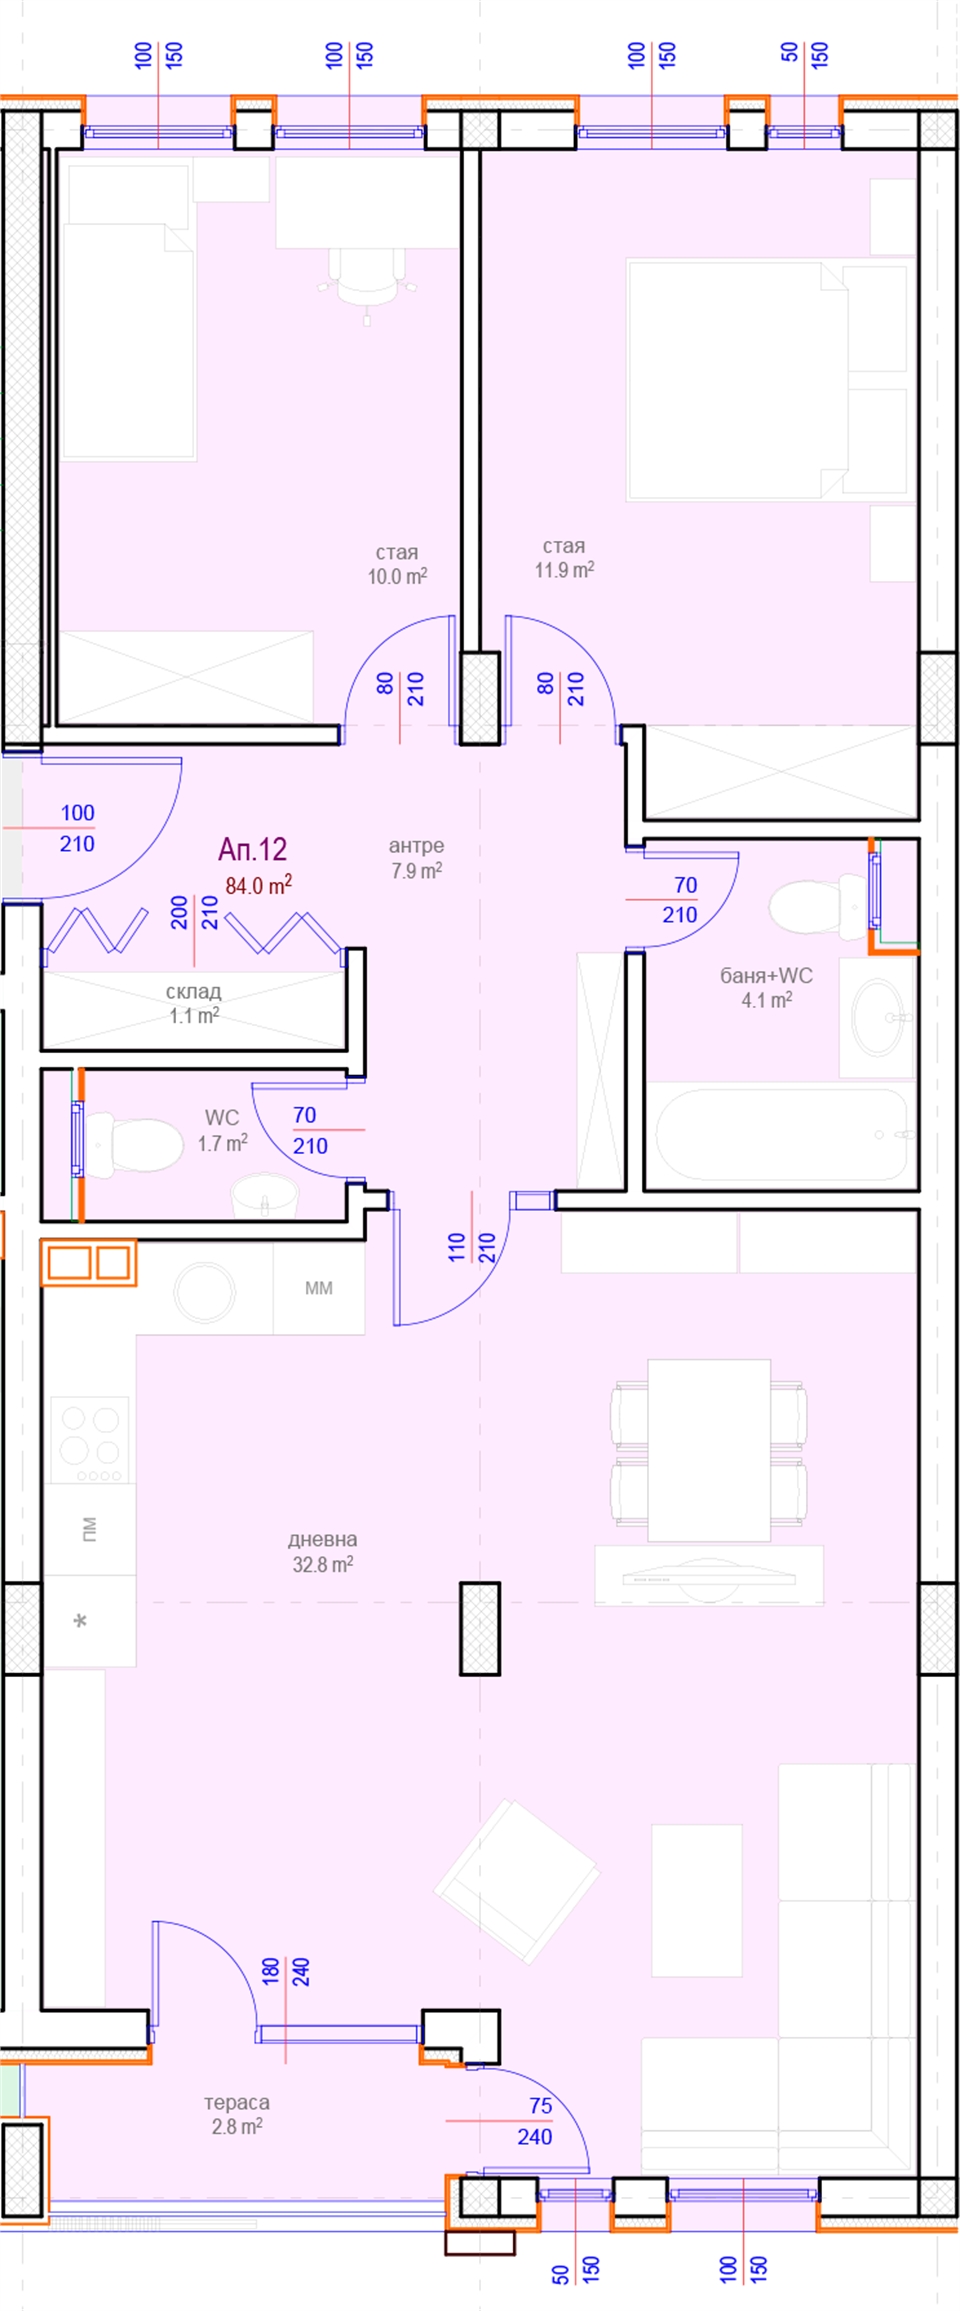 Апартамент № 12, Вход А, 4 етаж, Изложение С-Ю